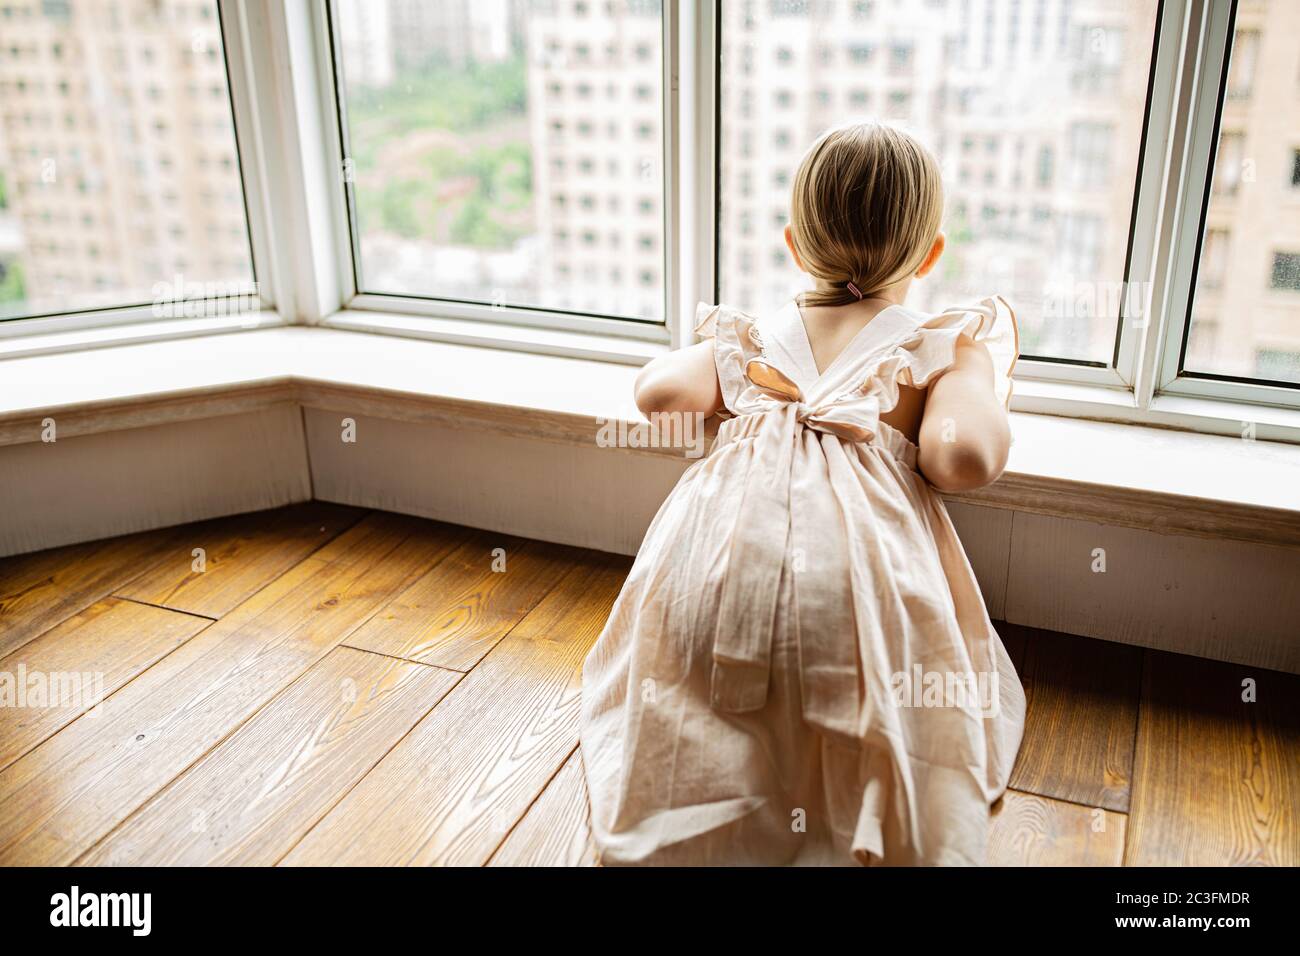 Elegante bambina con capelli biondi seduta a casa vicino alla finestra durante l'auto isolamento del coronavirus covid-19 Foto Stock